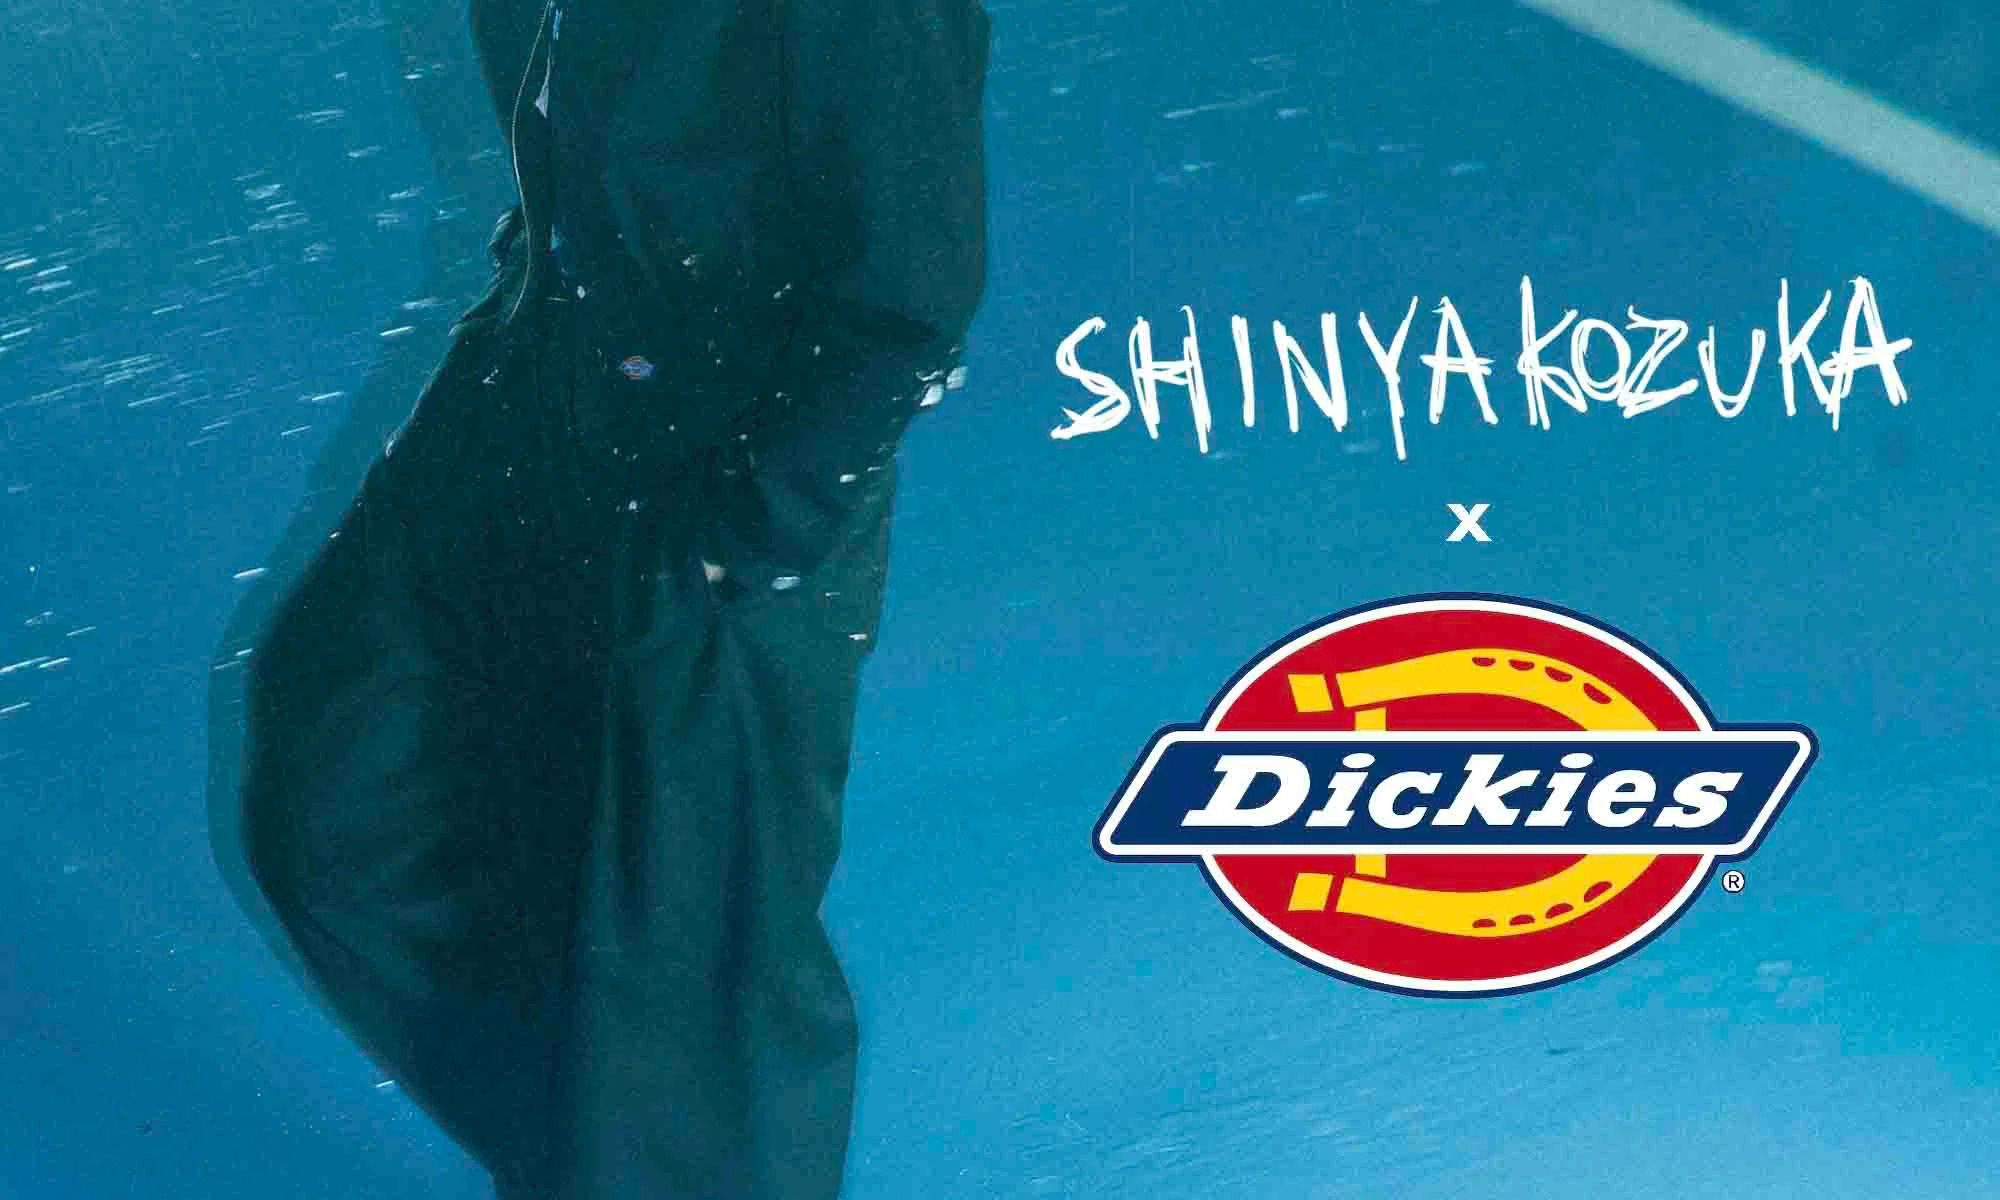 SHINYAKOZUKA x Dickies 合作系列现已上架